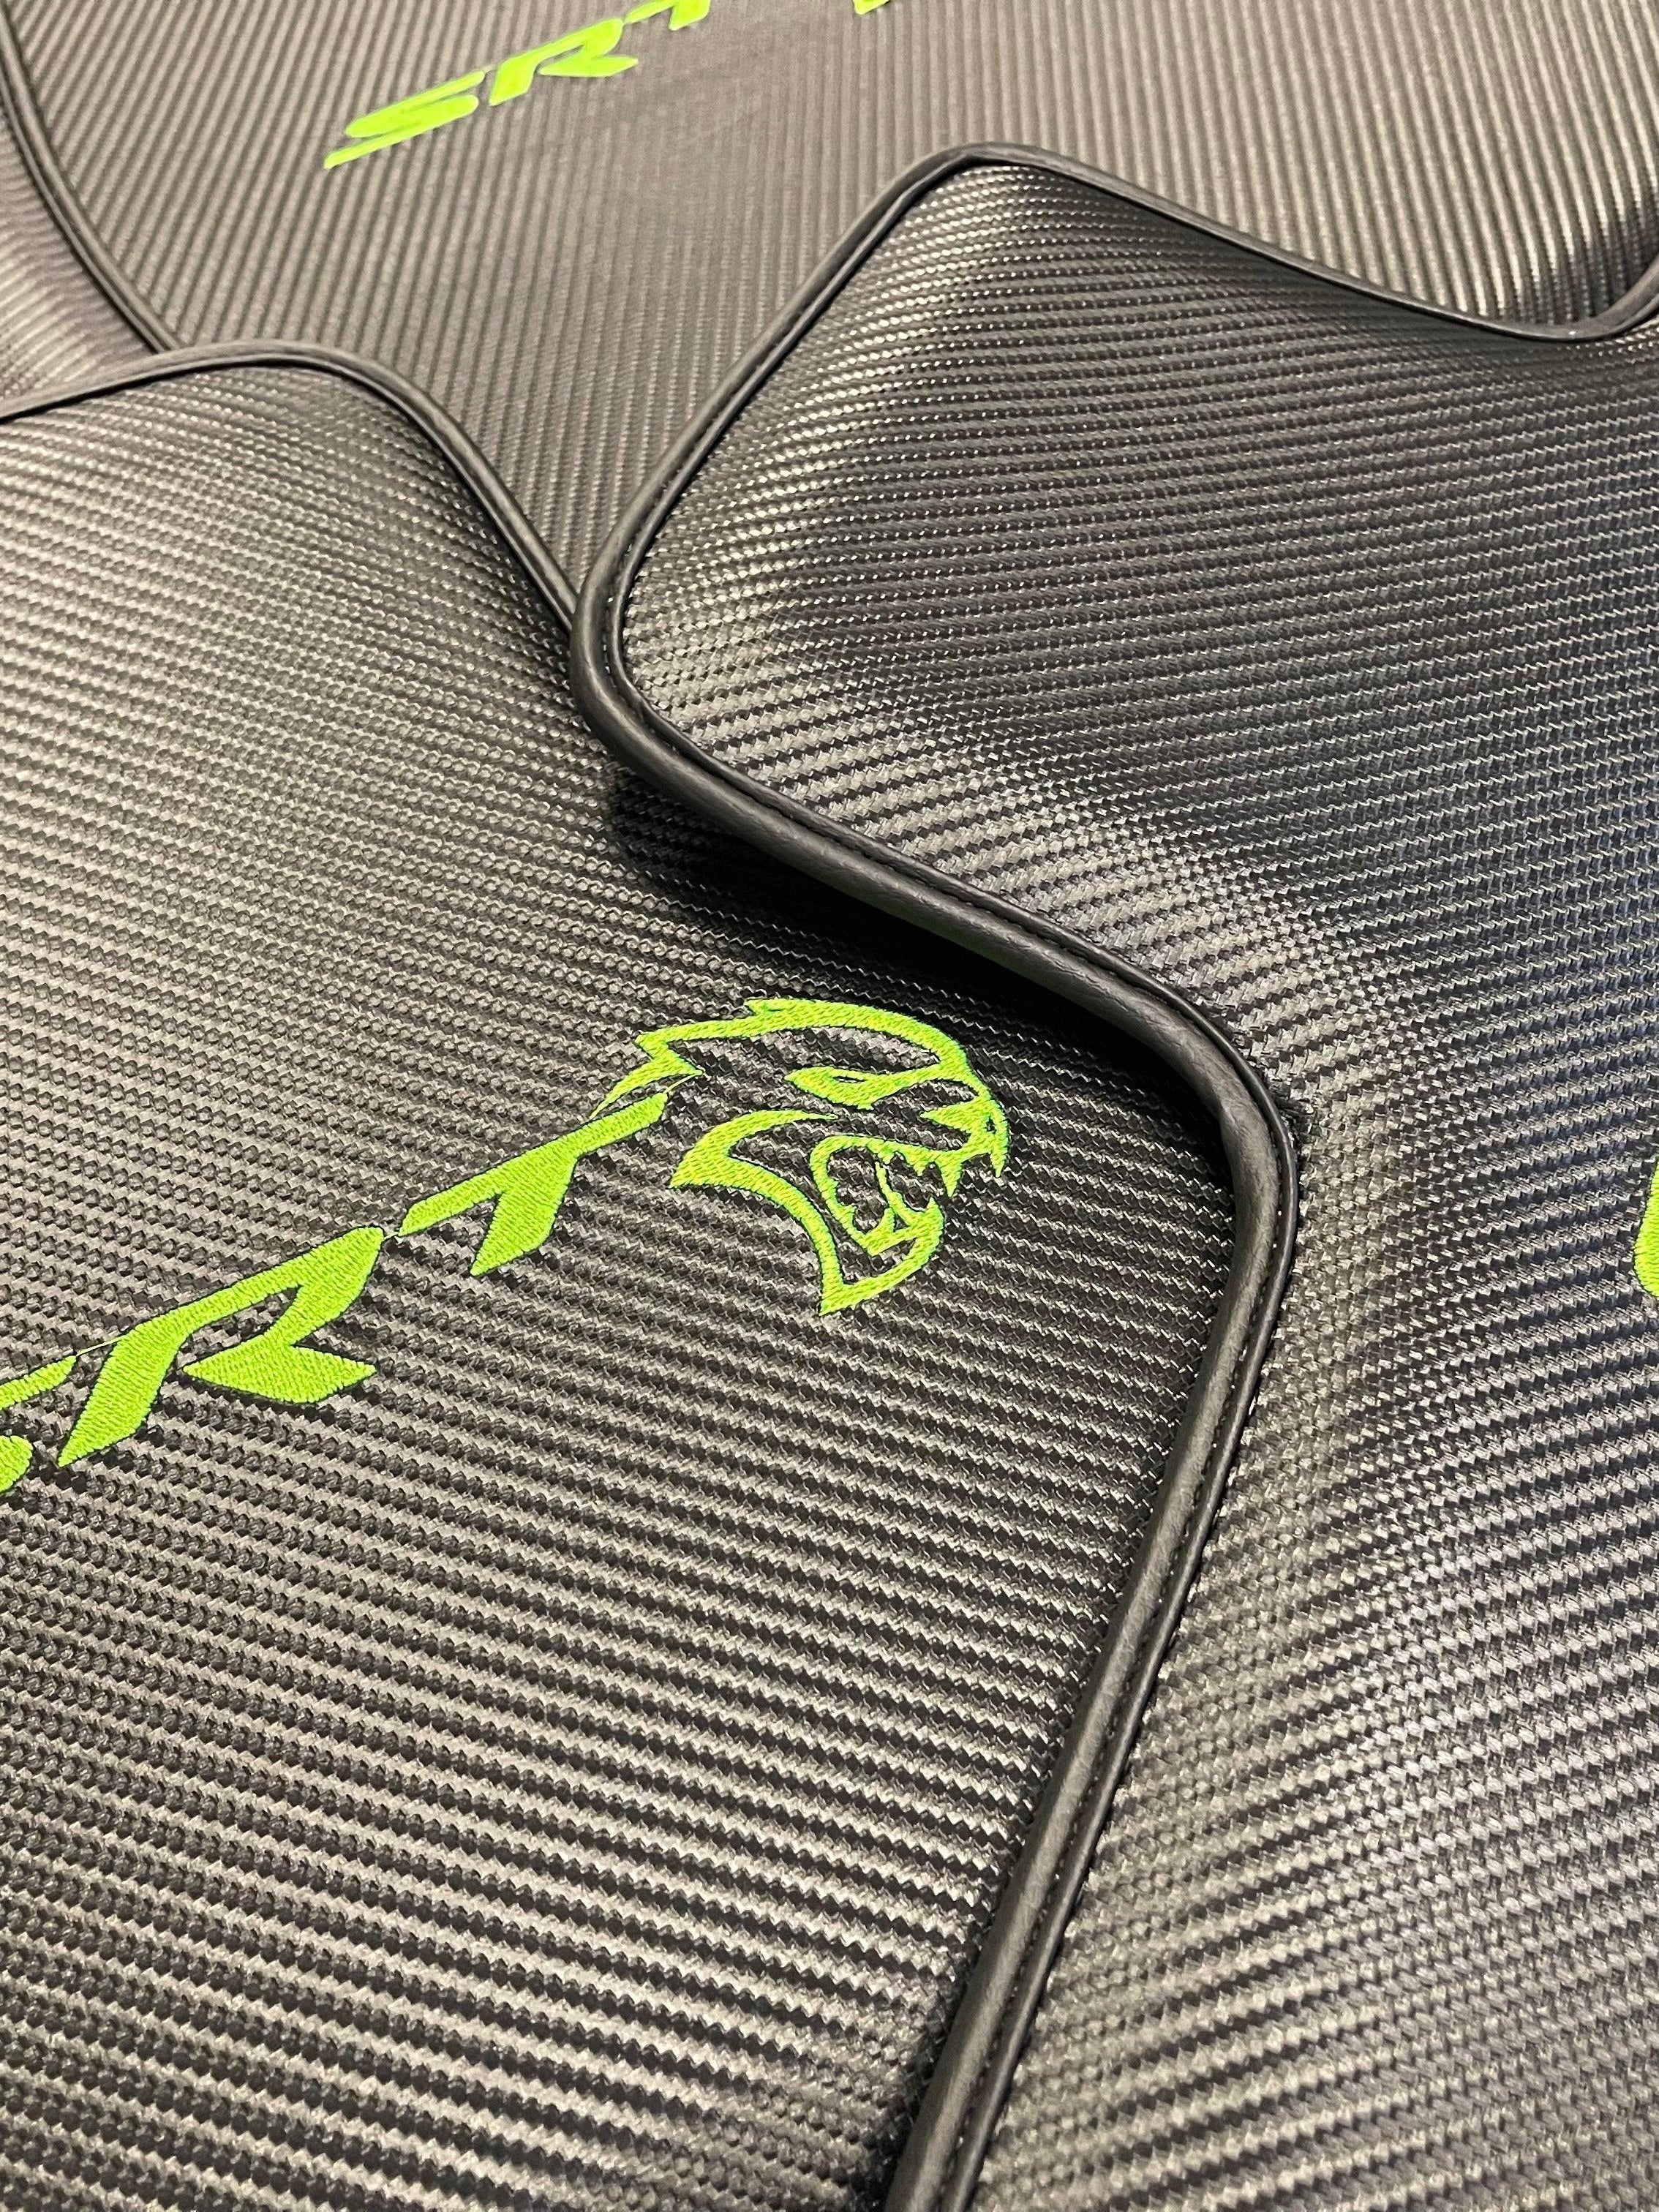 Carbon Fiber Floor Mats For Dodge Charger Srt 2011-2021 - AutoWin